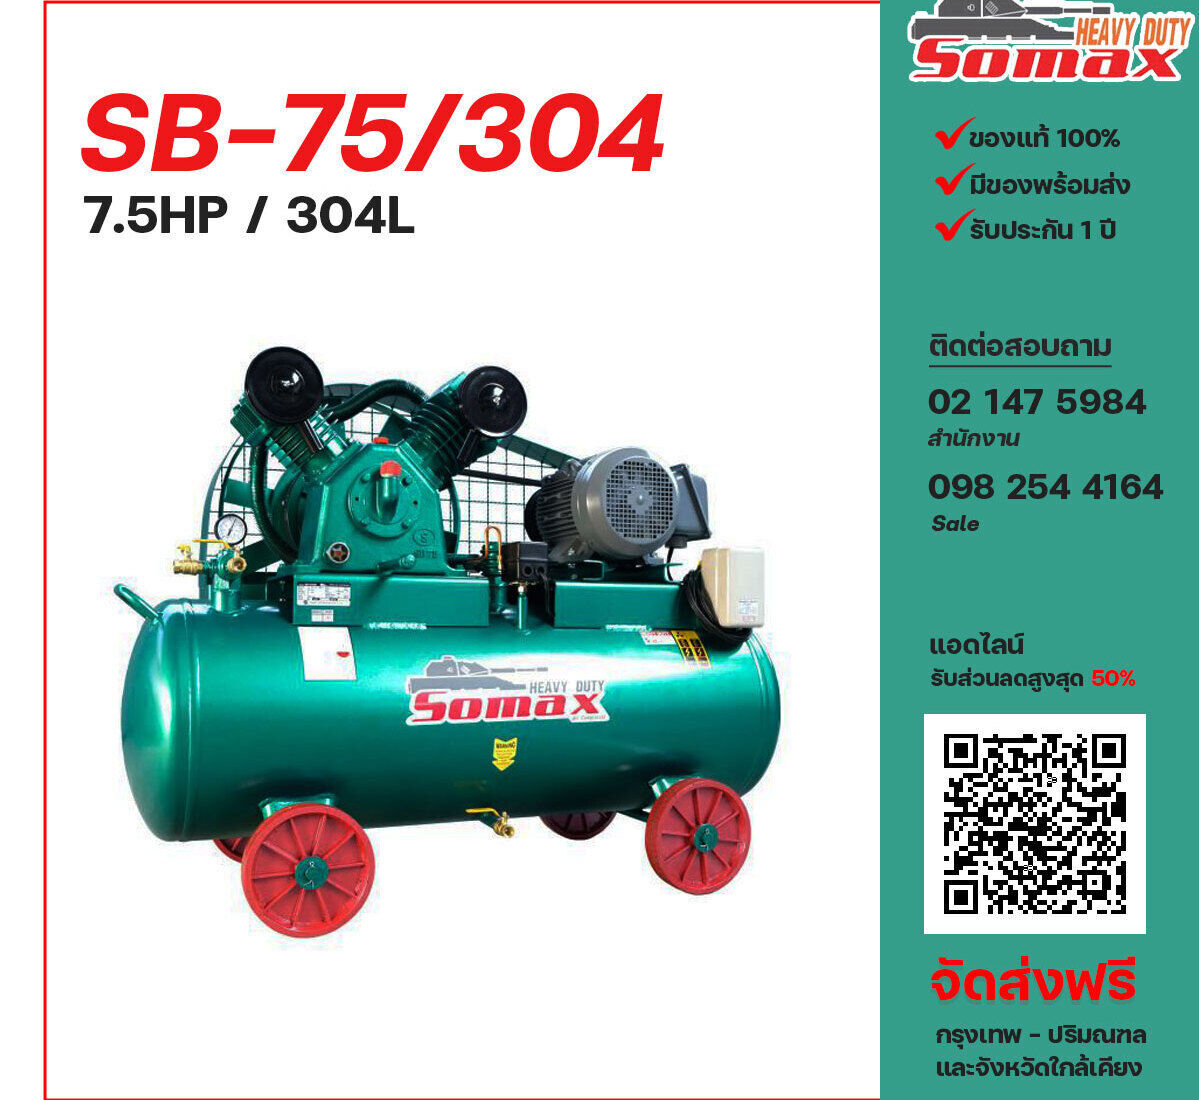 ปั๊มลมโซแม็กซ์ SOMAX SB-75/304 380V ปั๊มลมลูกสูบ ขนาด 2 สูบ 7.5 แรงม้า 304 ลิตร SOMAX พร้อมมอเตอร์ ไฟ 380V ส่งฟรี กรุงเทพฯ-ปริมณฑล รับประกัน 1 ปี